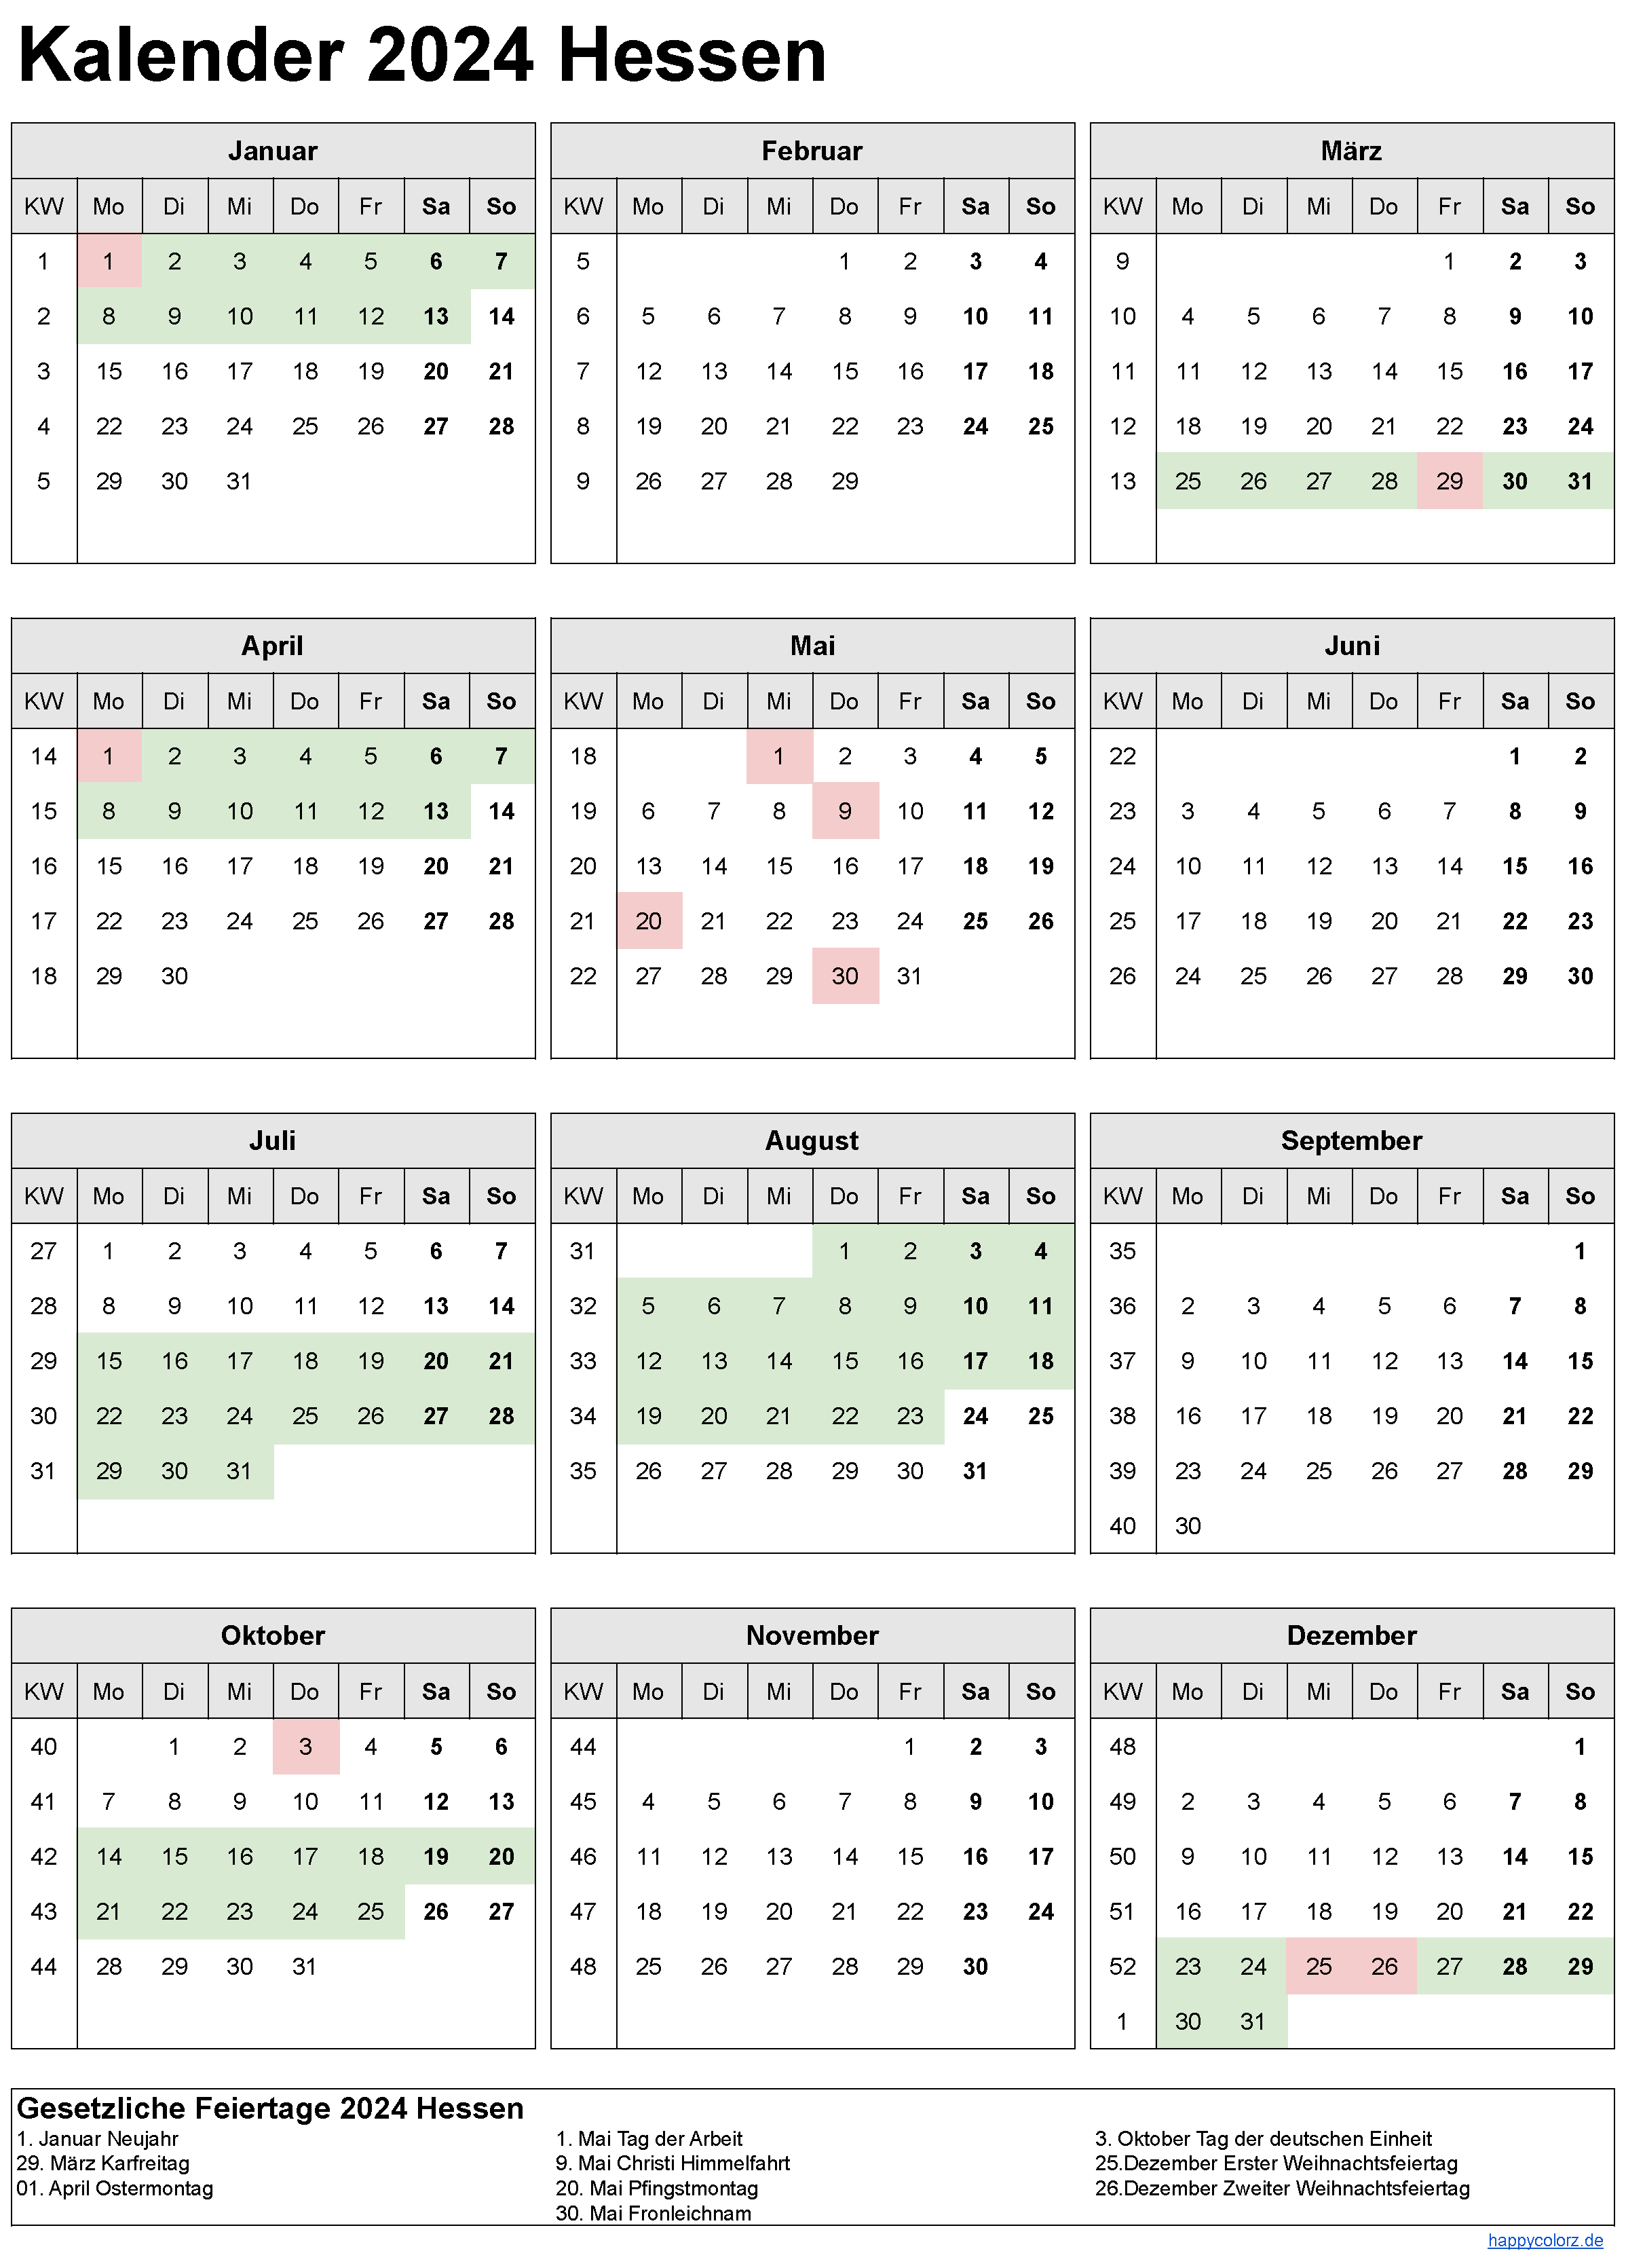 Kalender 2024 Hessen zum Ausdrucken